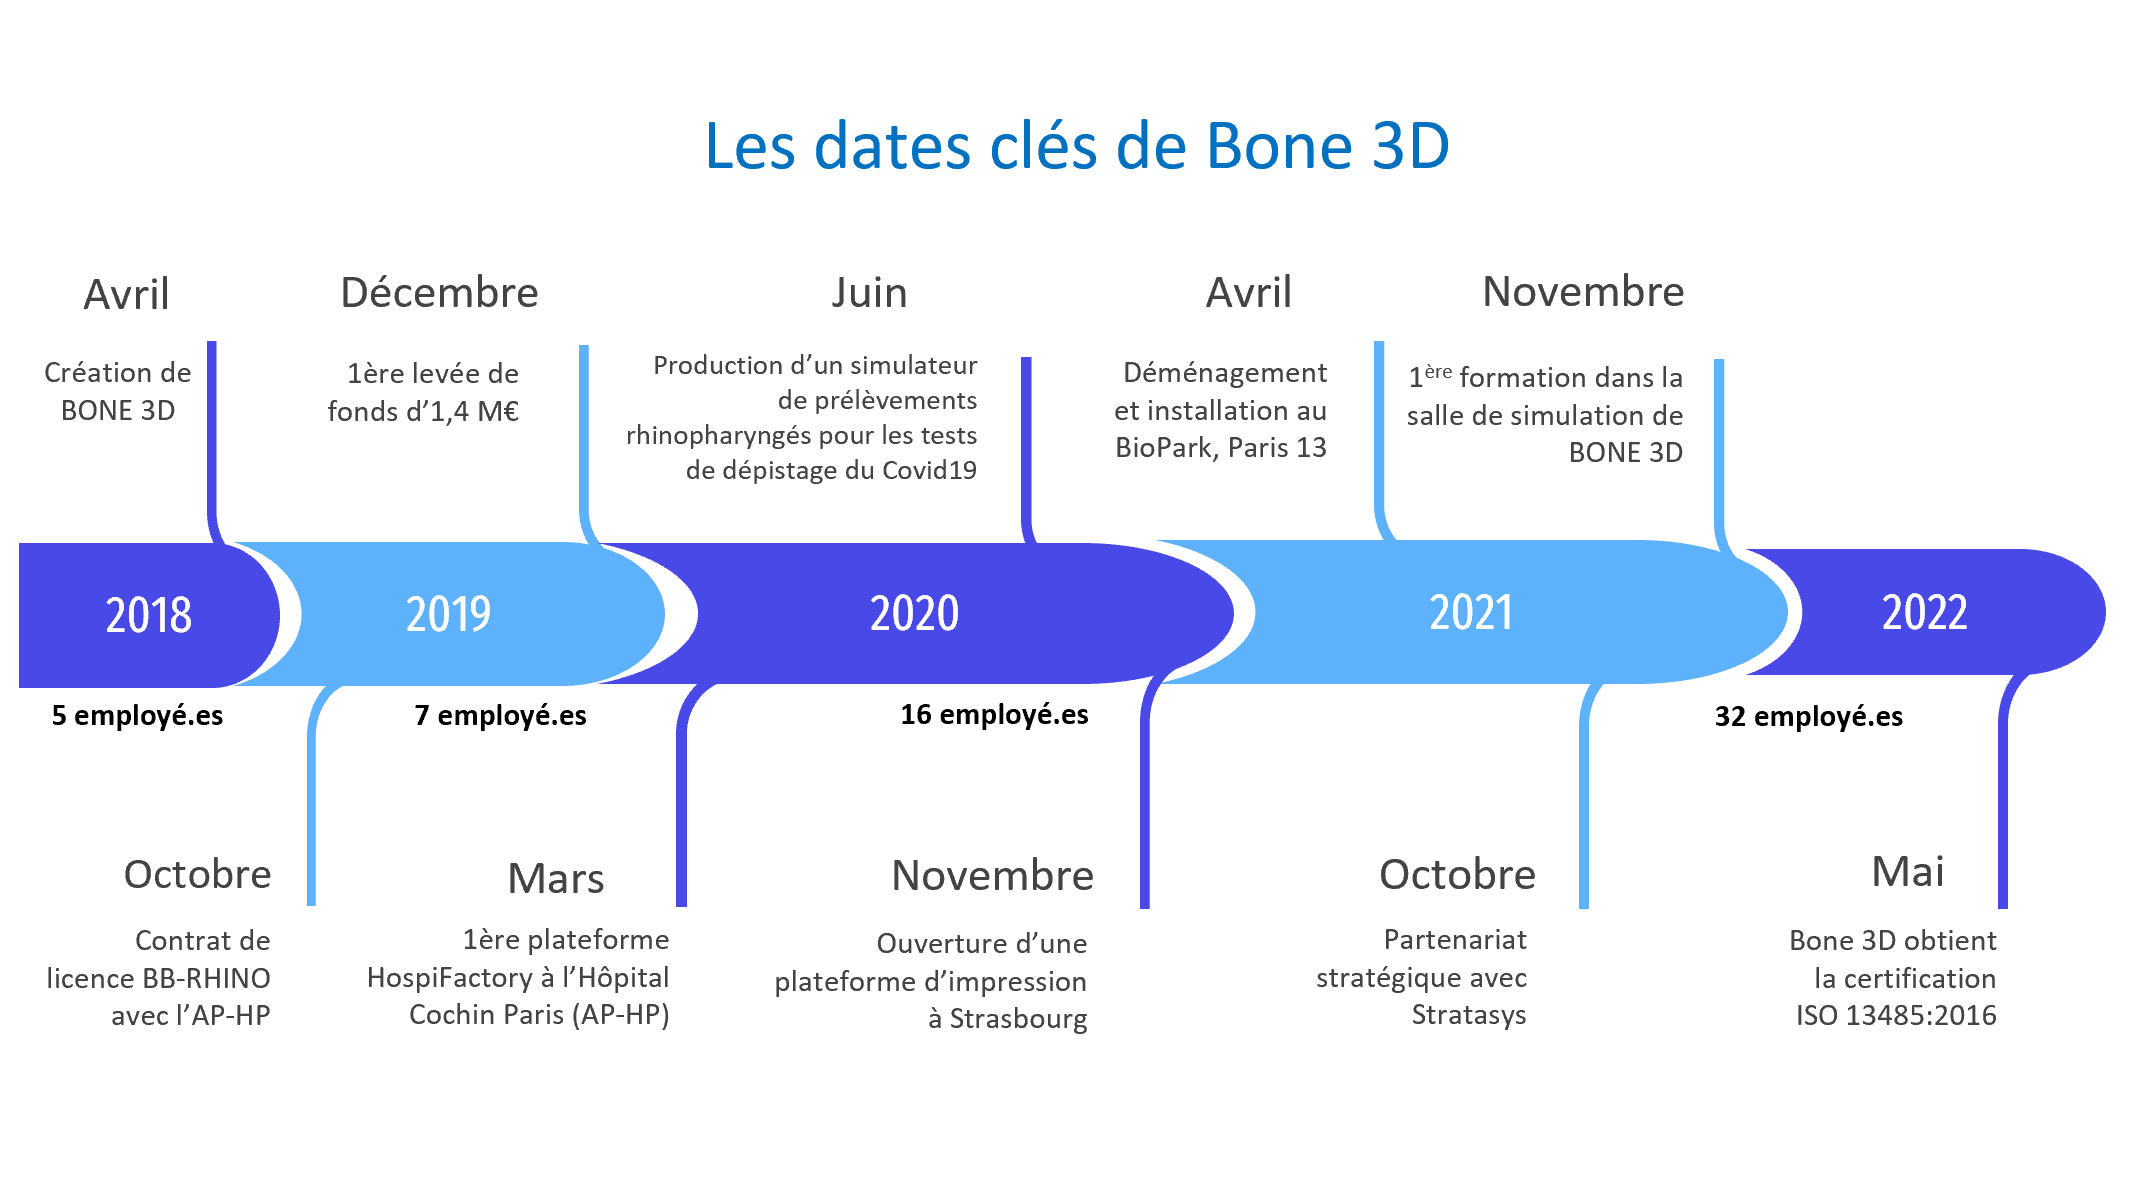 Les dates clés de Bone 3D